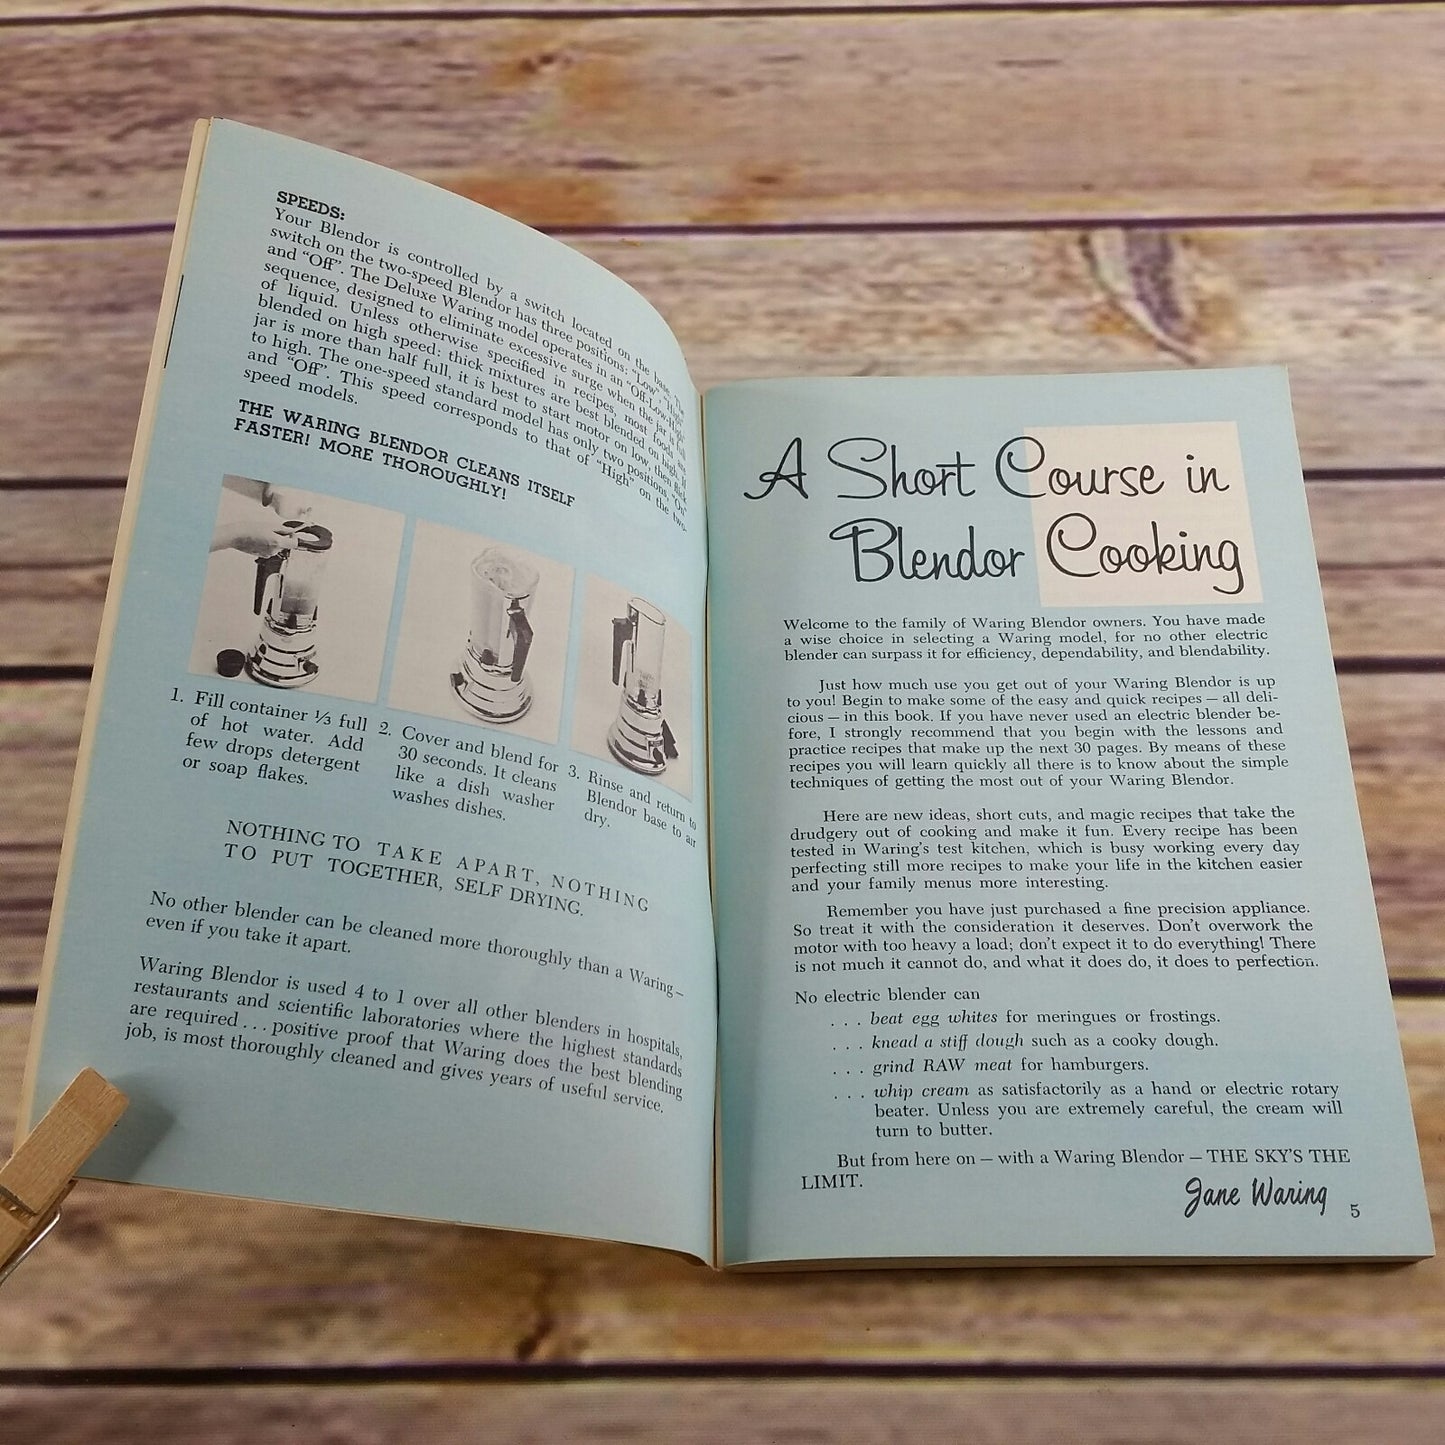 Vintage Waring Blender Cook Book Short Course in Blendor Cooking 1962 Paperback Booklet - At Grandma's Table